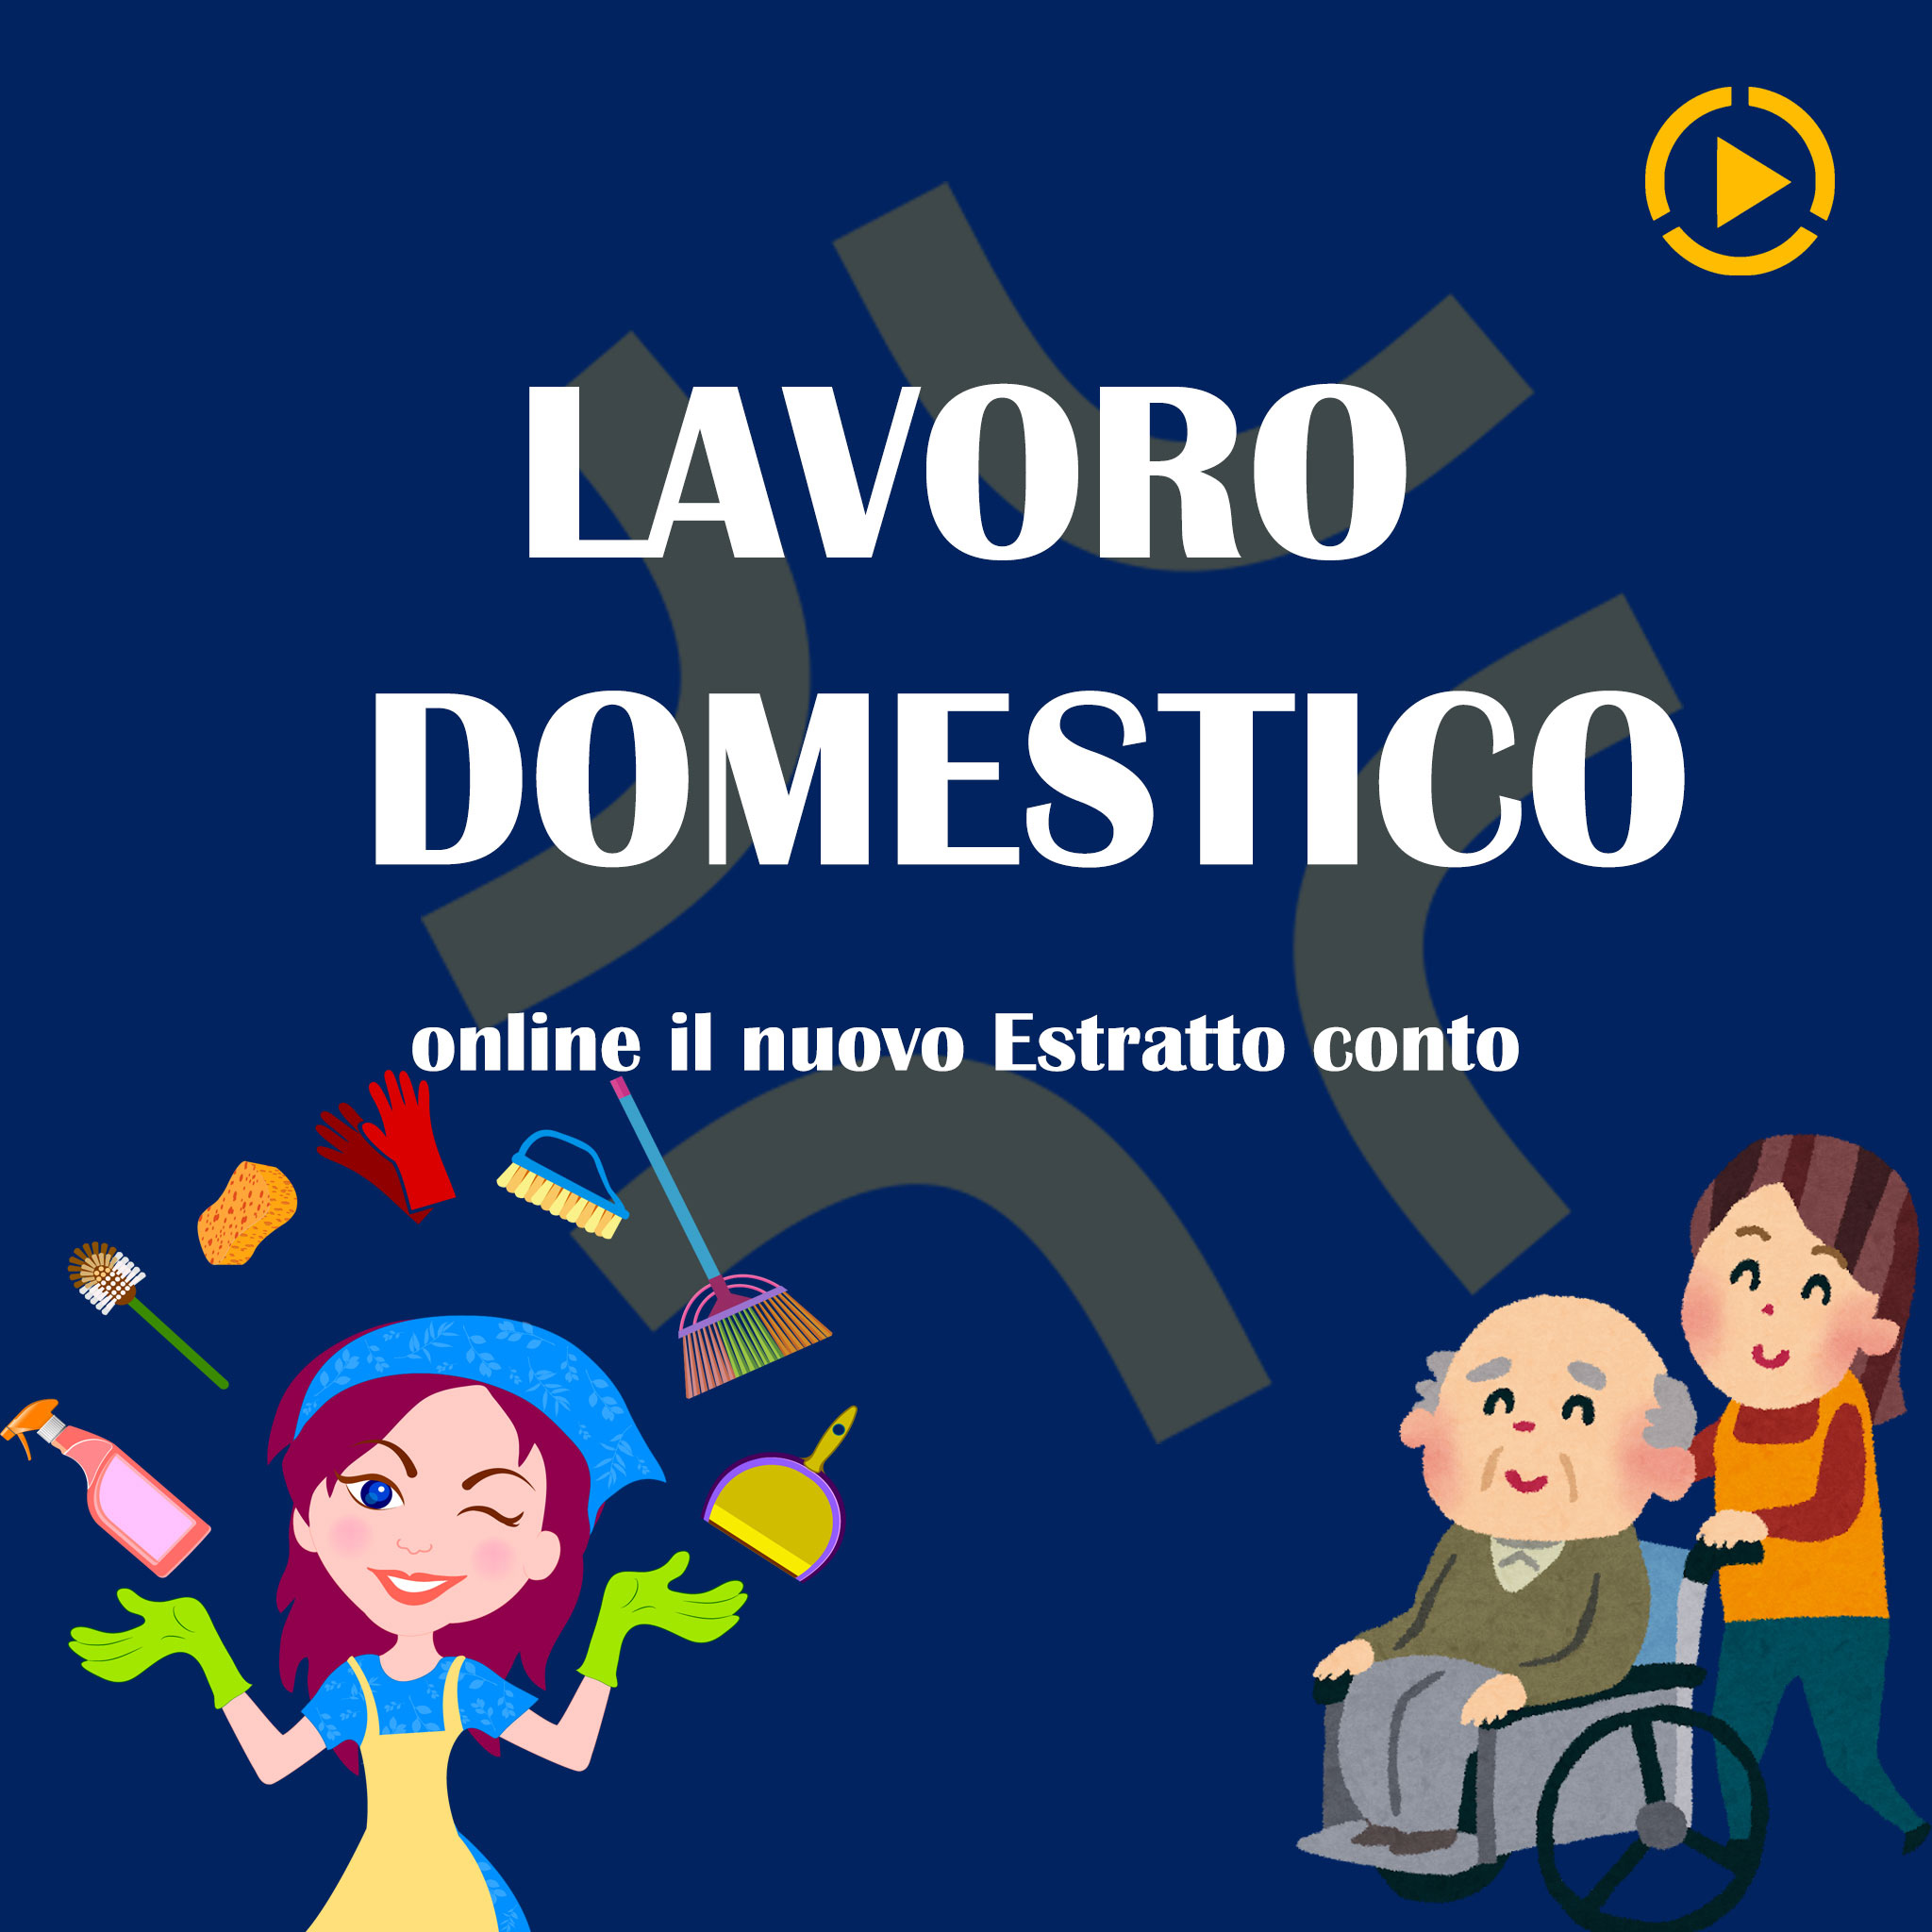 Lavoro domestico: online il nuovo Estratto conto